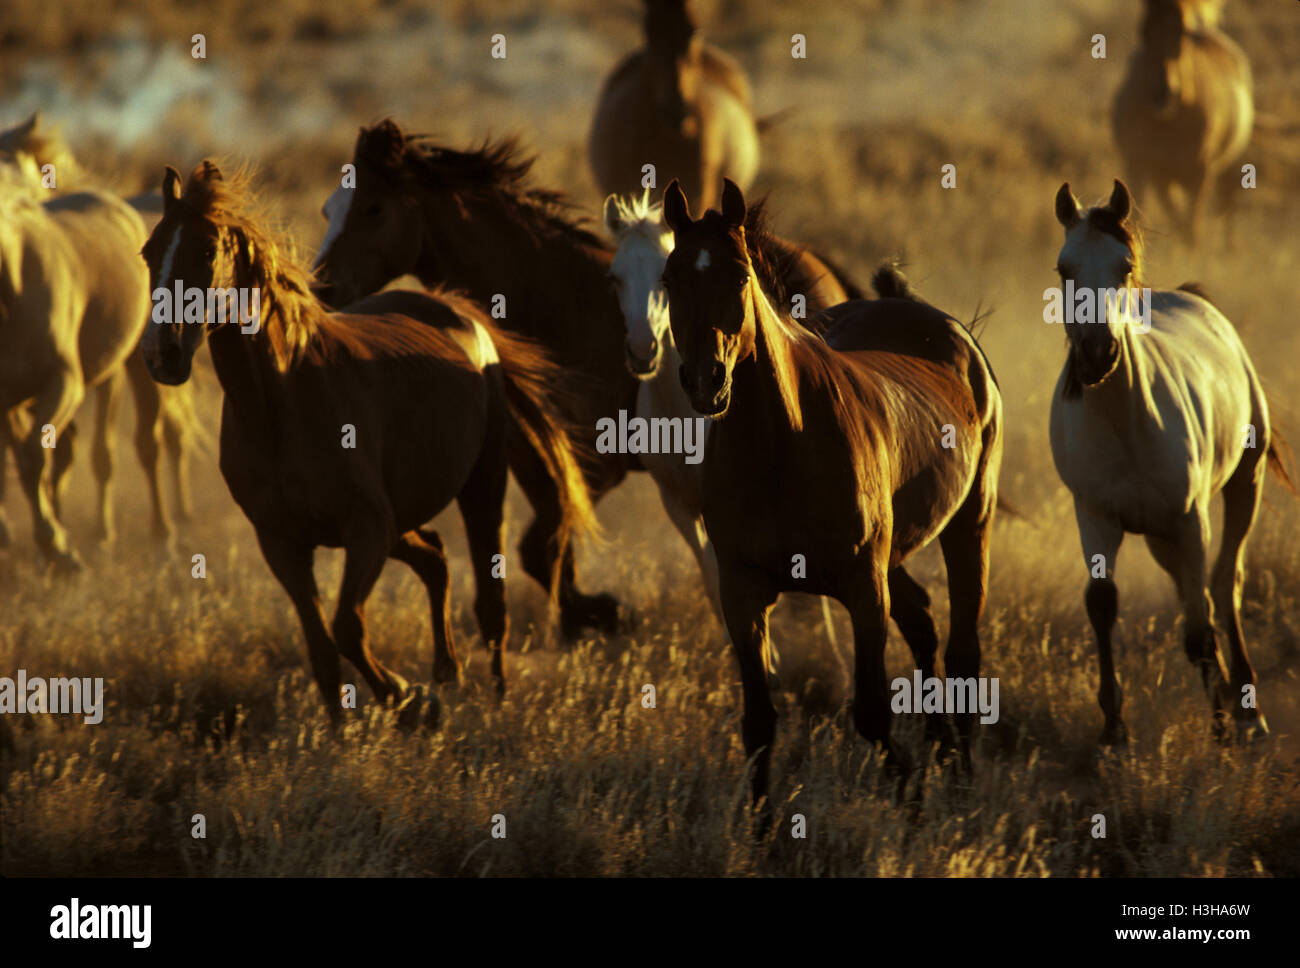 Horse (Equus caballus) Stock Photo